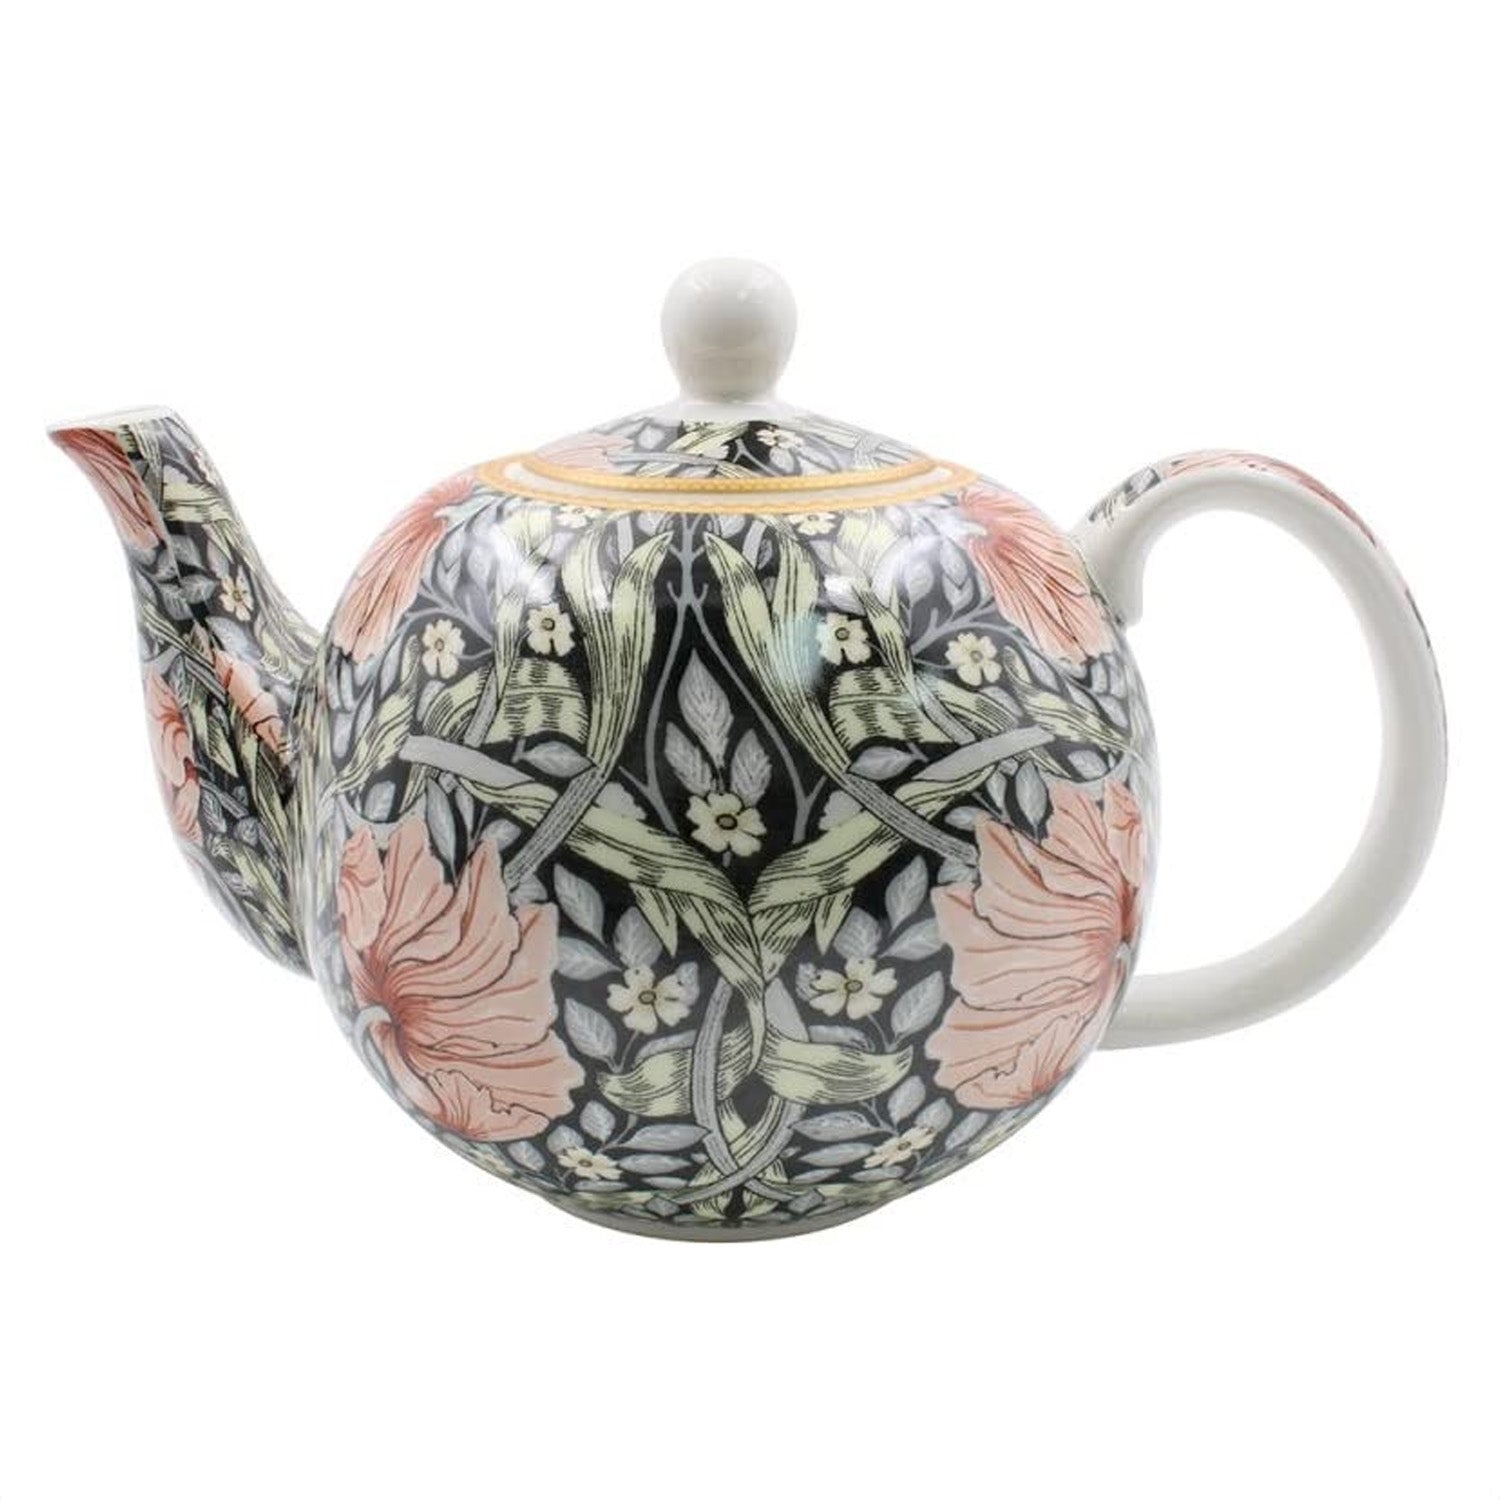 Pimpernel Tea Pot Ceramic